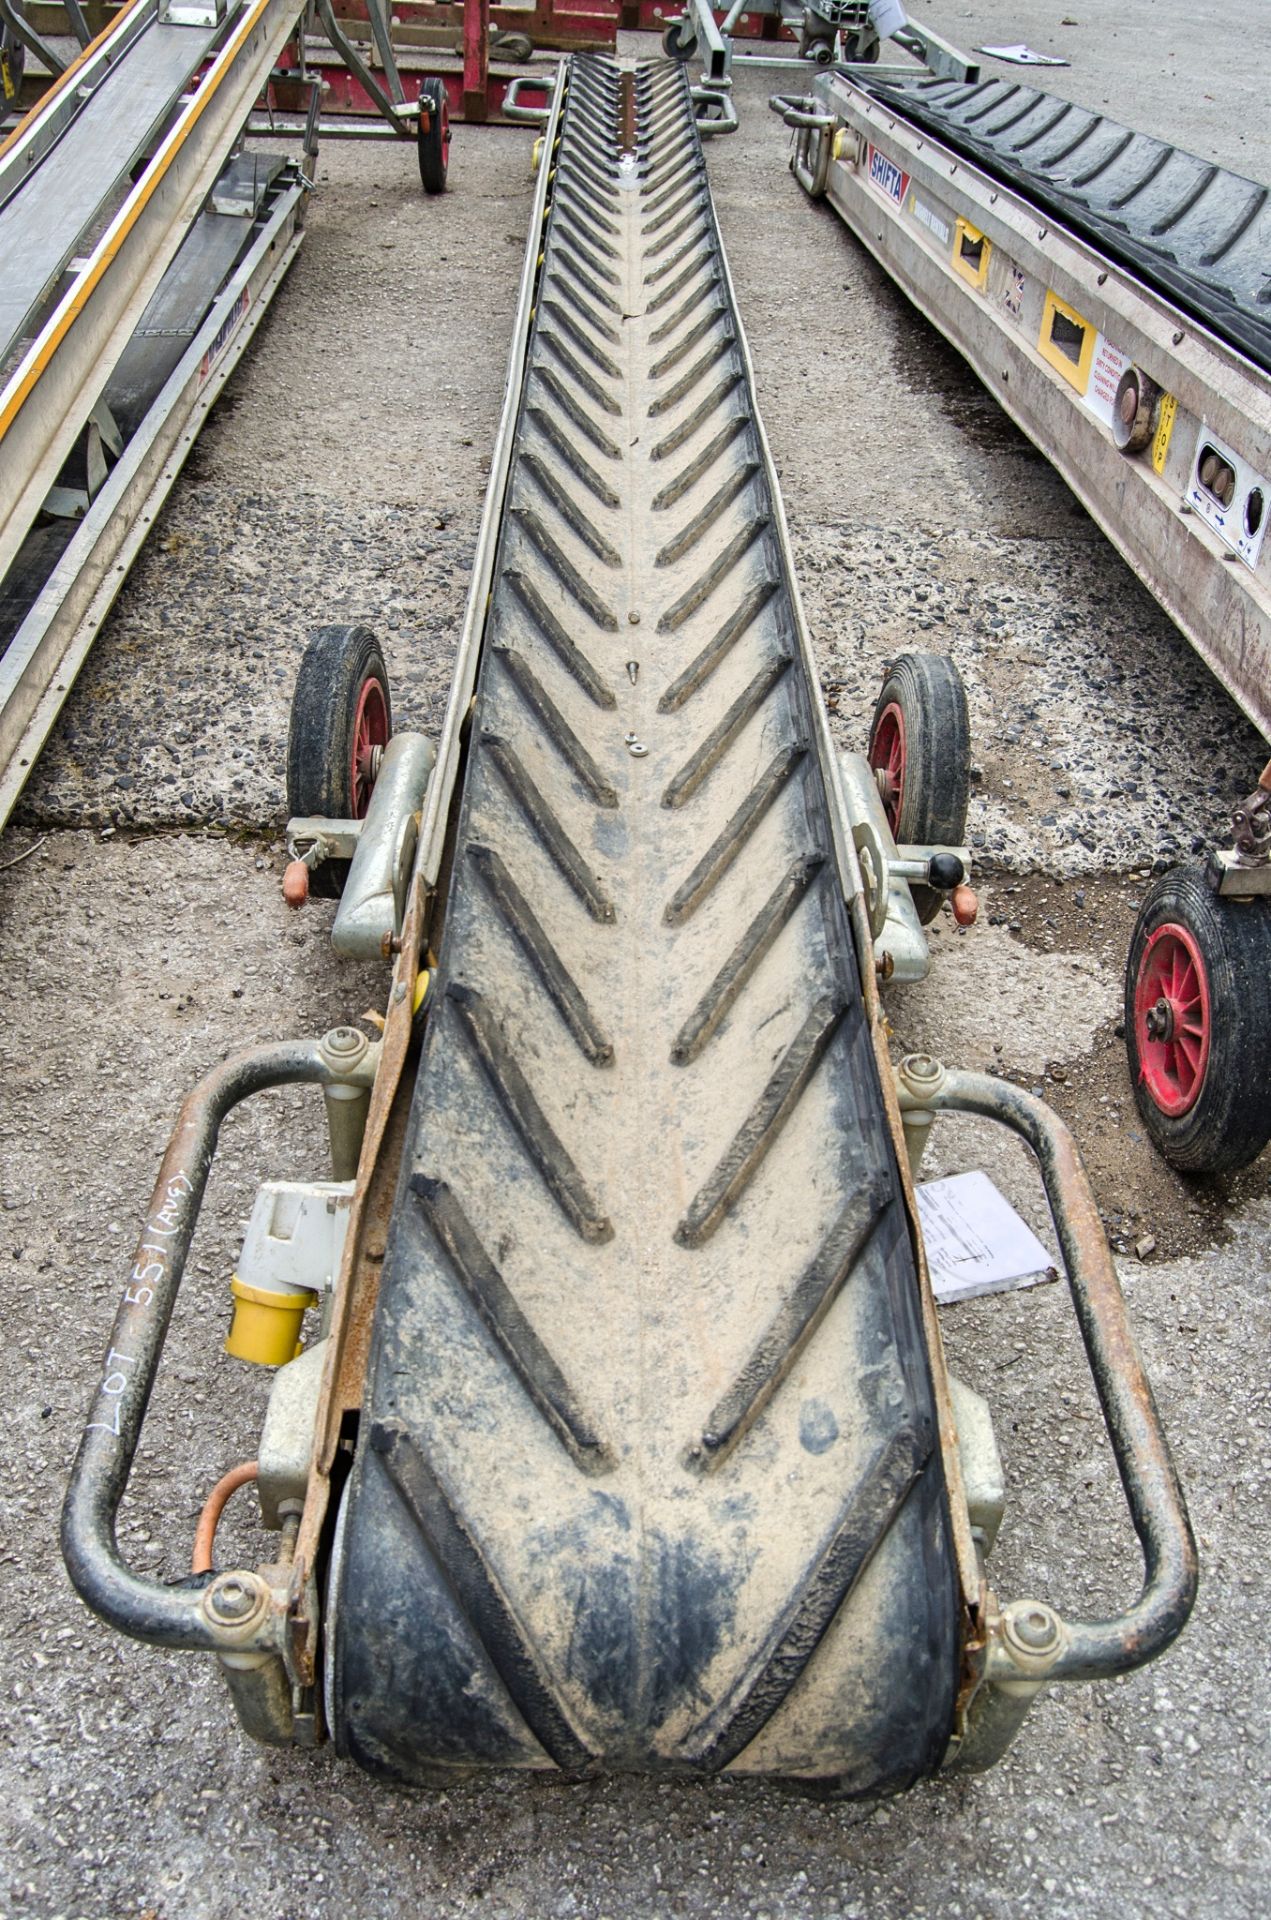 Mace Shifta 110v rubble conveyor hoist A685247 - Image 3 of 3